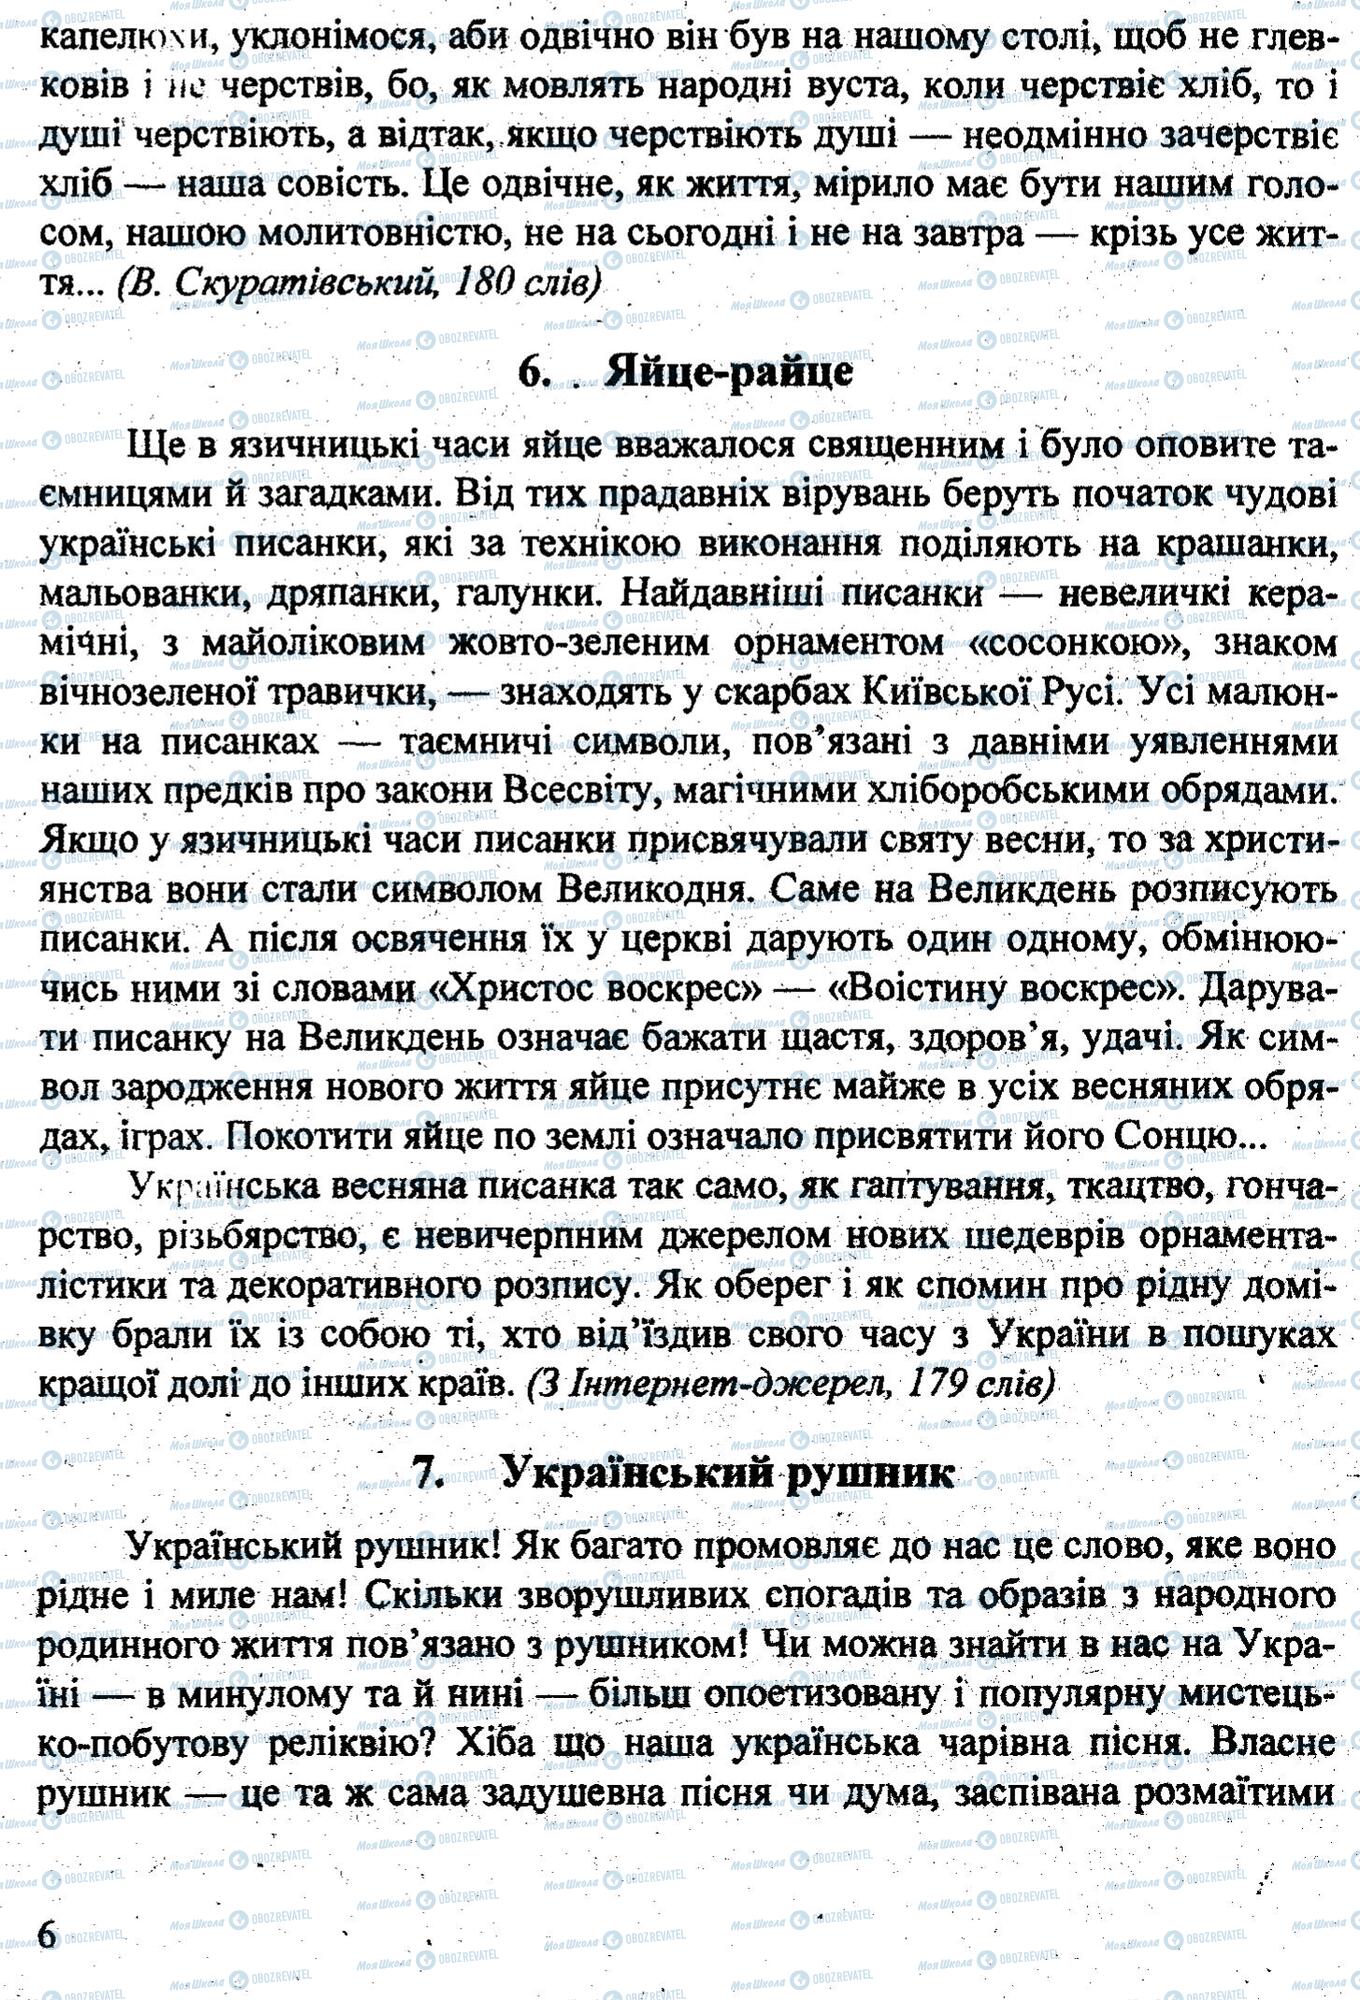 ДПА Укр мова 9 класс страница 0005